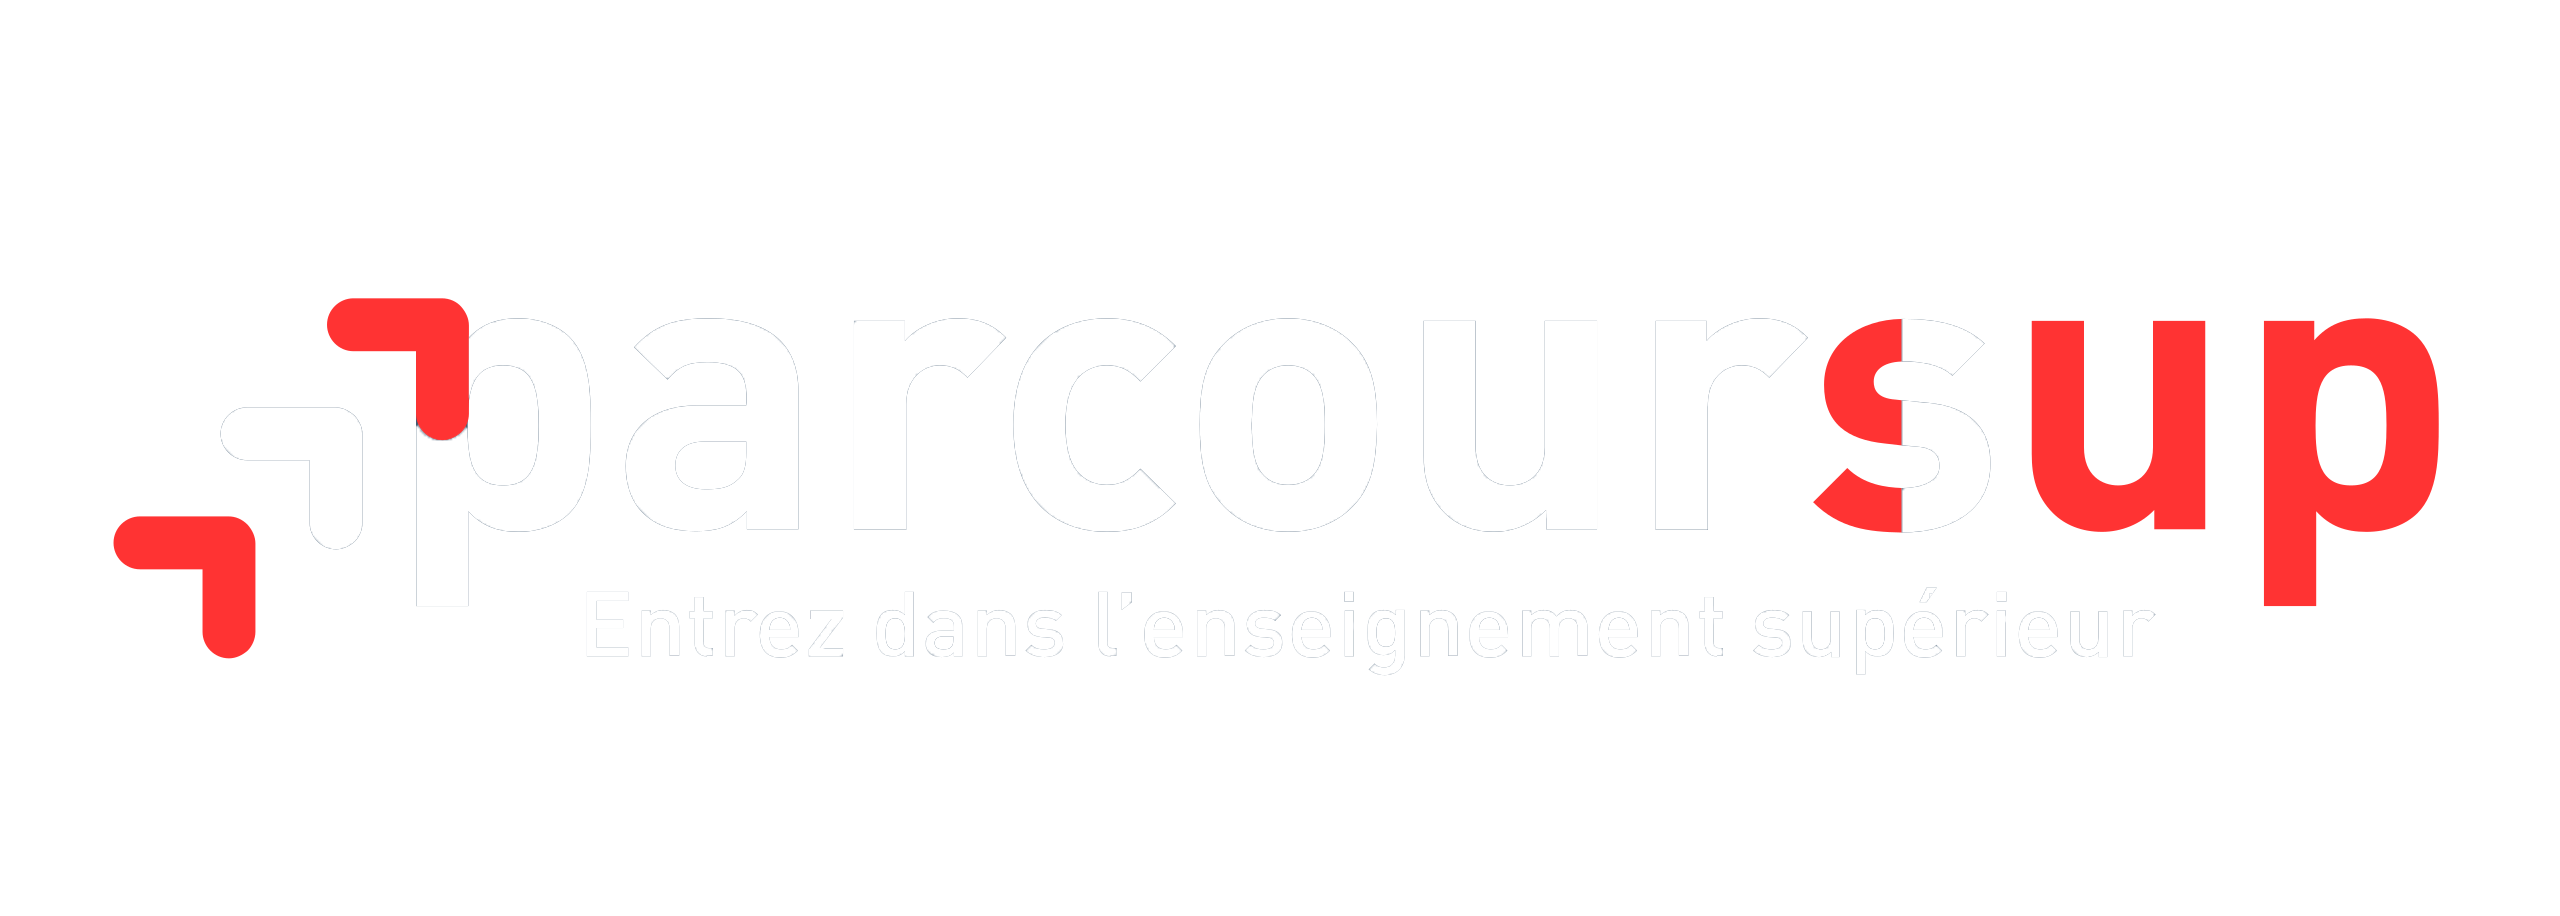 Logo Parcoursup